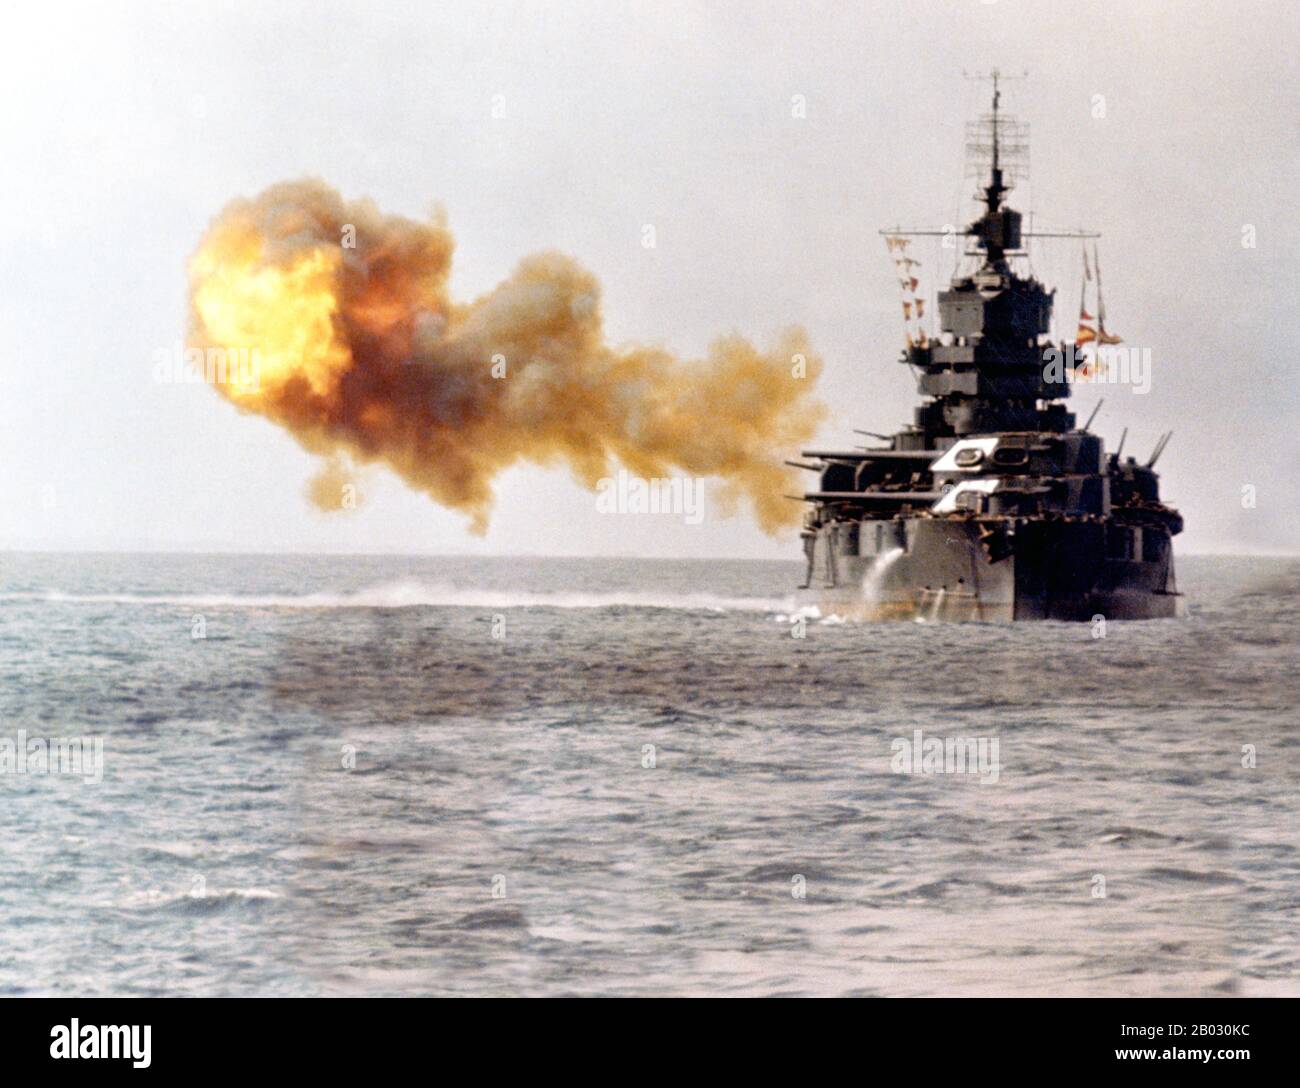 La bataille d'Okinawa, surnommée opération Iceberg, a été une série de batailles combattues dans les îles Ryukyu, centrées sur l'île d'Okinawa, et comprenait le plus grand assaut amphibie de la guerre du Pacifique. La bataille de 82 jours a duré du 1er avril au 22 juin 1945. La bataille d'Okinawa a été remarquable pour la férocité des combats, l'intensité des attaques kamikaze des défenseurs japonais, et le grand nombre de navires alliés et de véhicules blindés qui ont agressé l'île. La bataille était l'une des plus sanglants du Pacifique. Banque D'Images